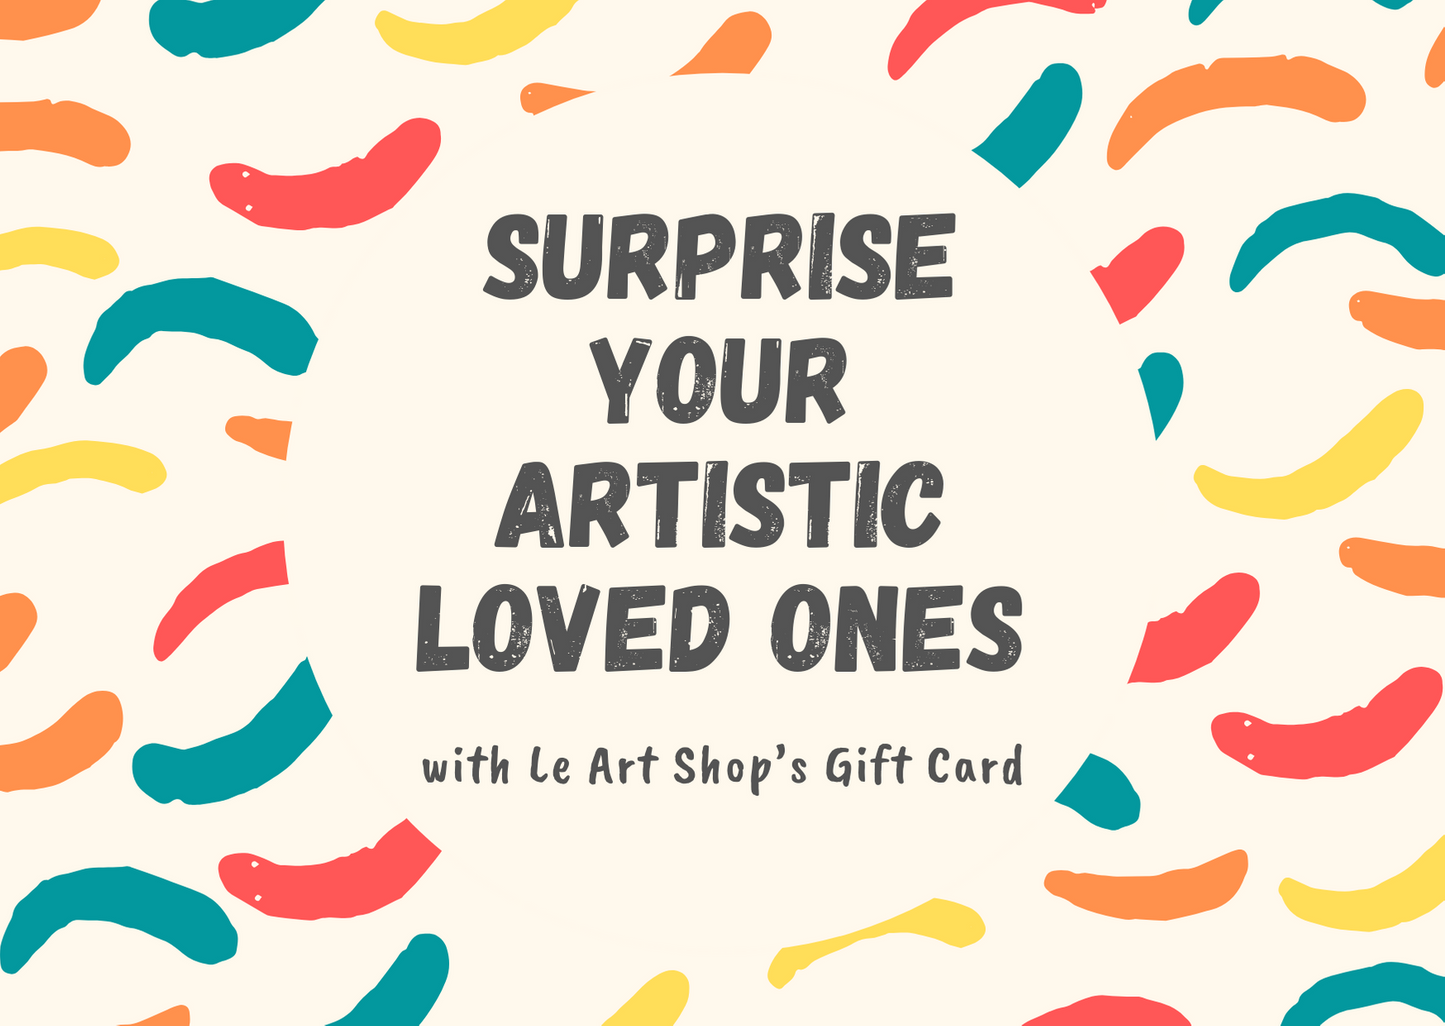 Le Art Shop RM100 Gift Card